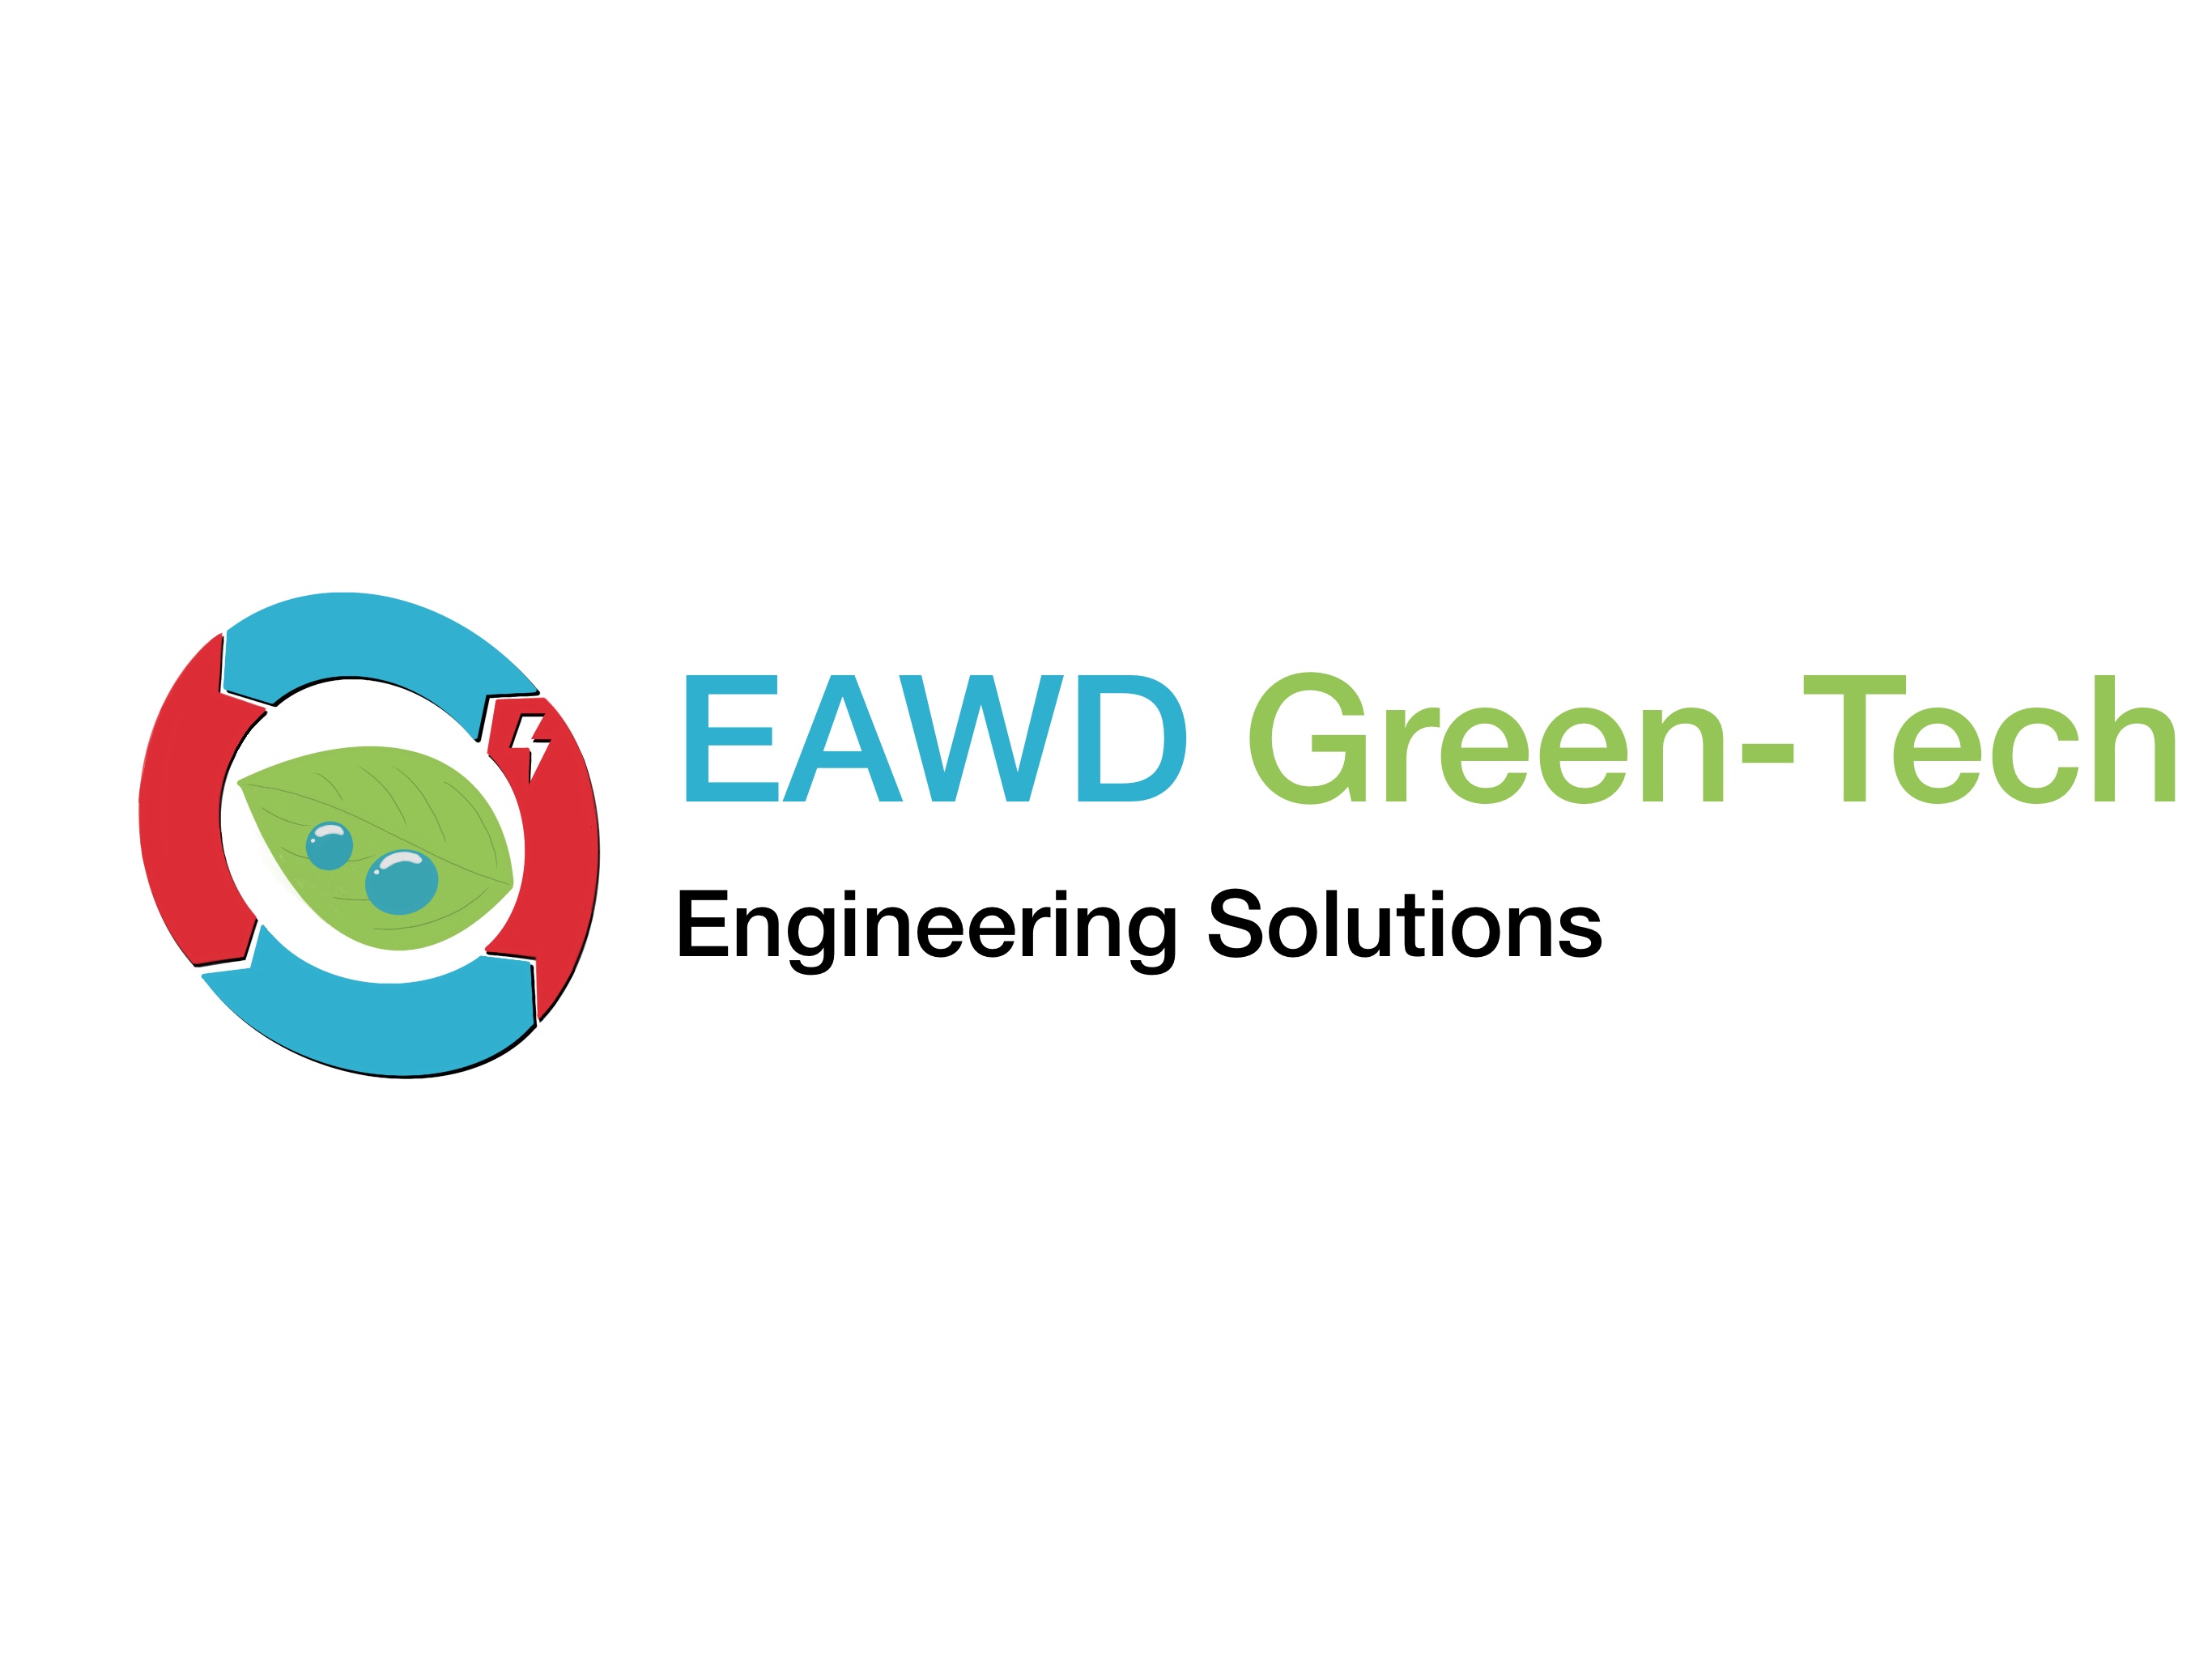 EAWD Greentech, www.eawctechnologies.com - INFO